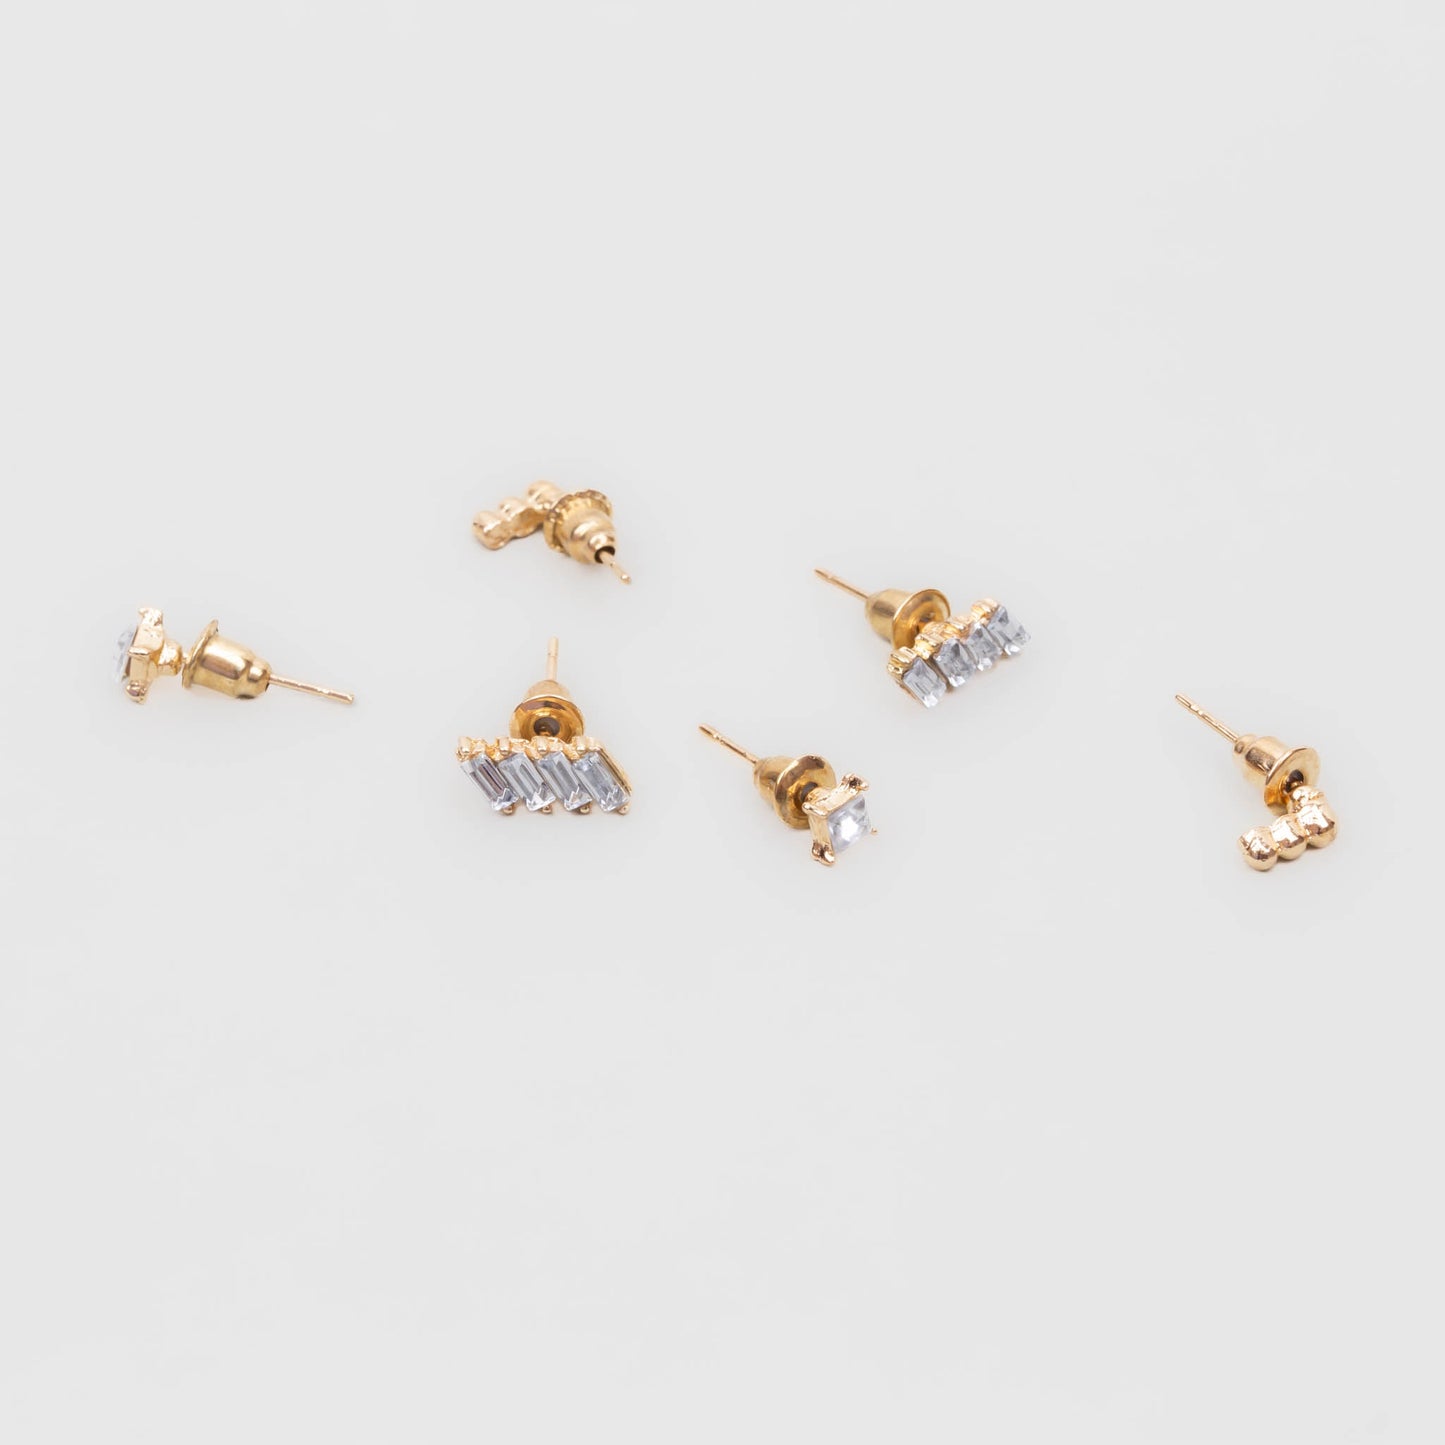 Cercei mici aurii cu pietre și biluțe discrete, set 3 buc